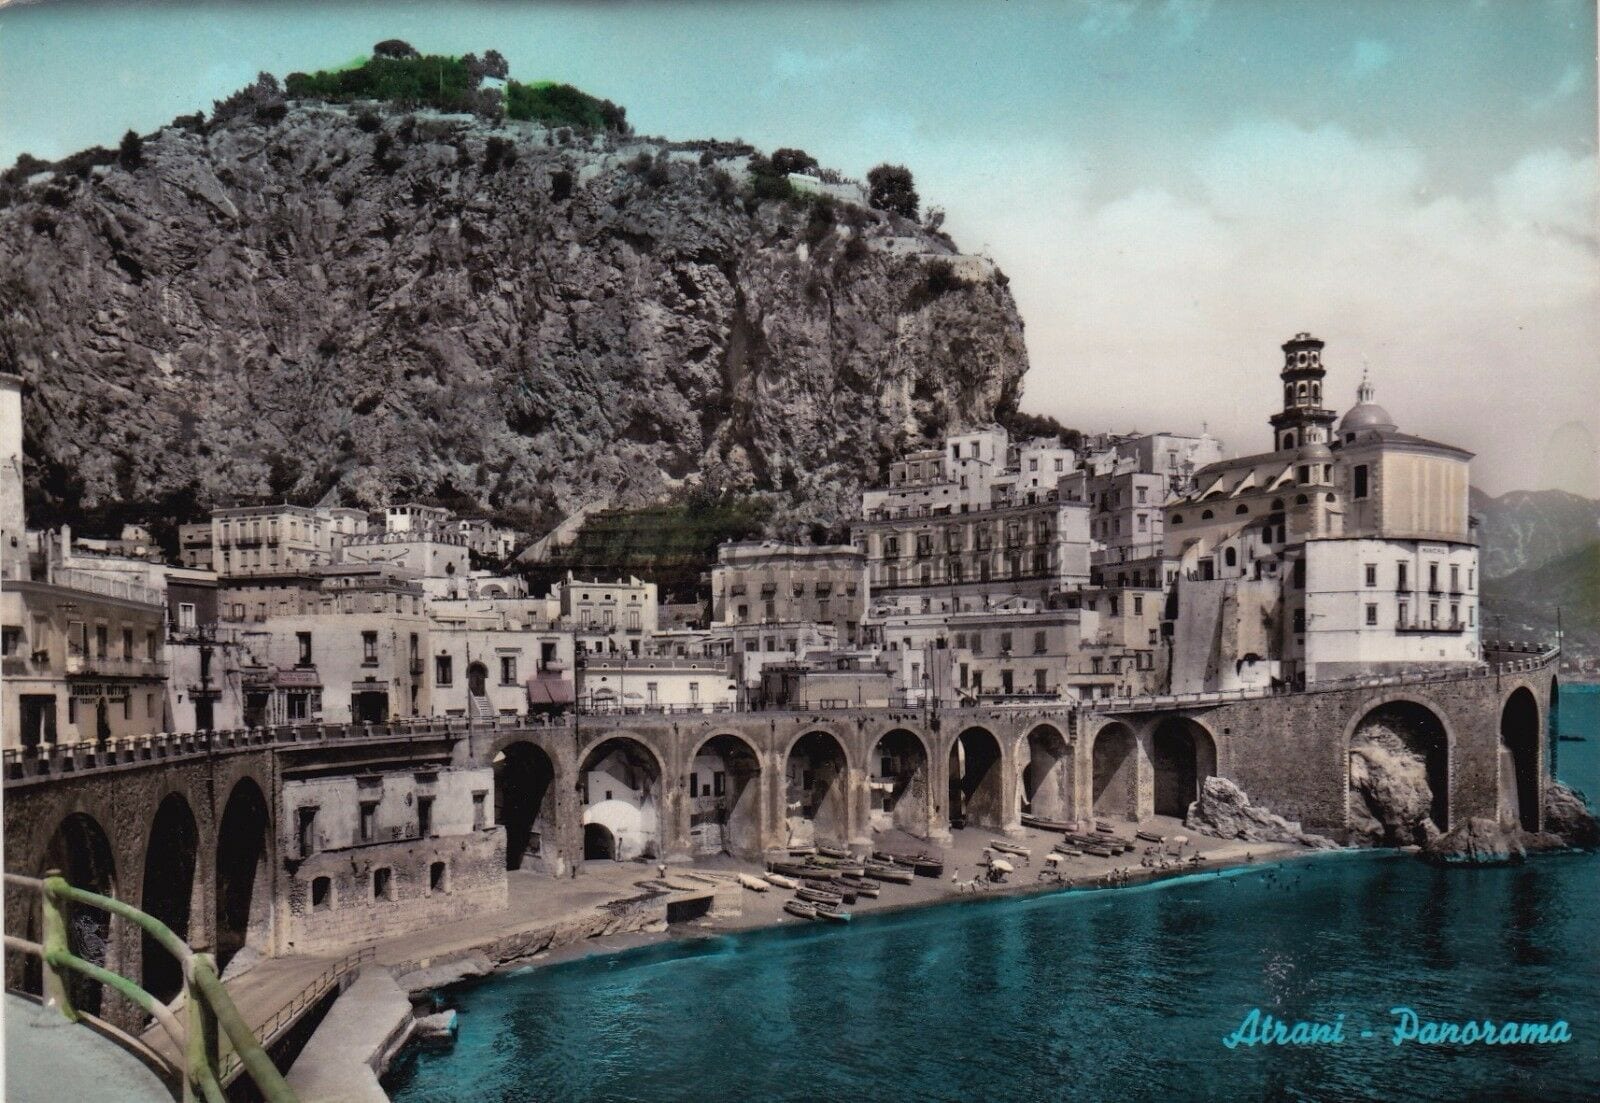 Panorama of Atrani 1959.